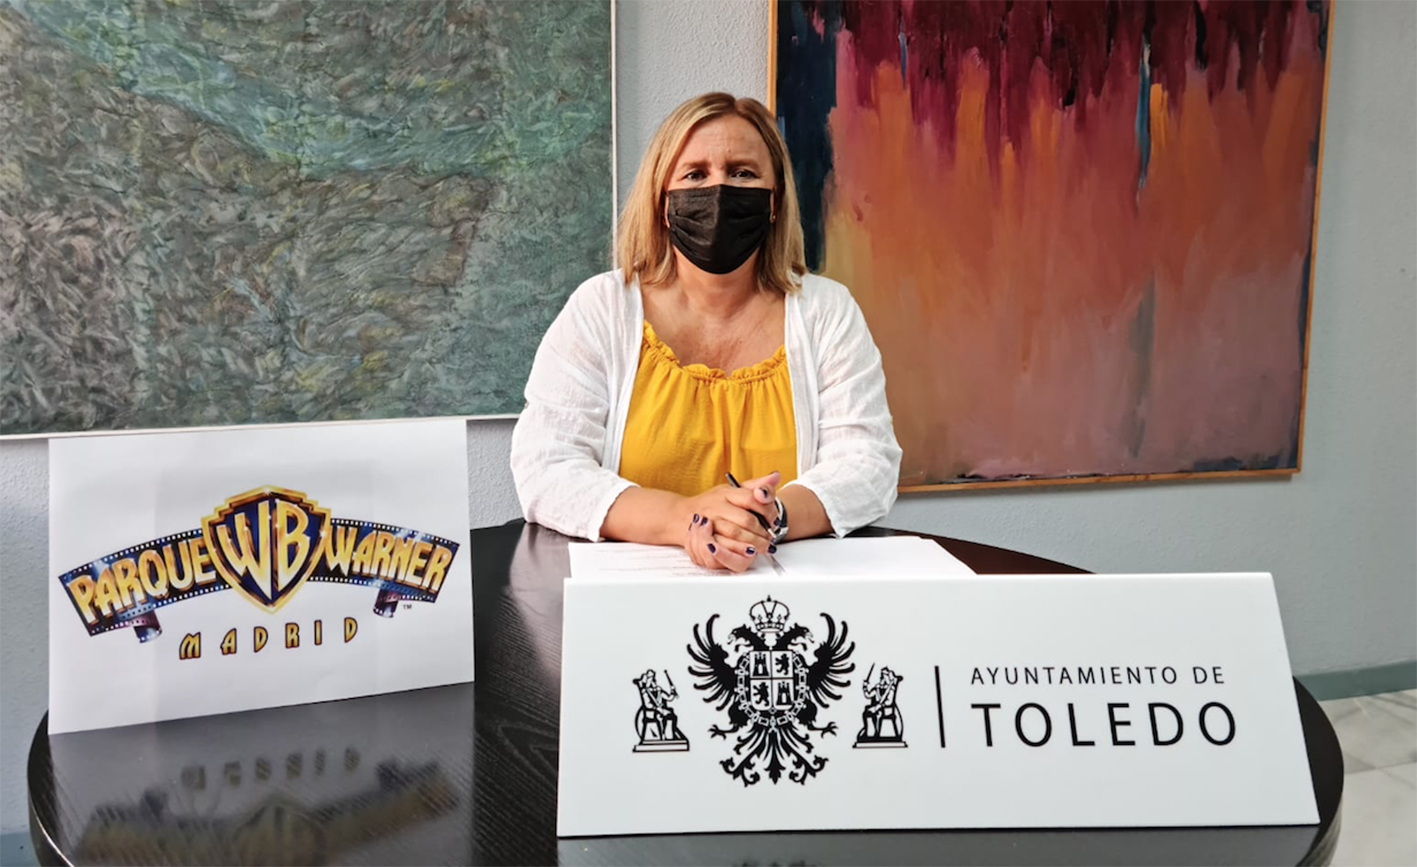 Maite Puig, concejala de Festejos de Toledo, ha dado a conocer los detalles de la Semana Warner para todos los toledanos de la provincia, no solo de la capital regional.